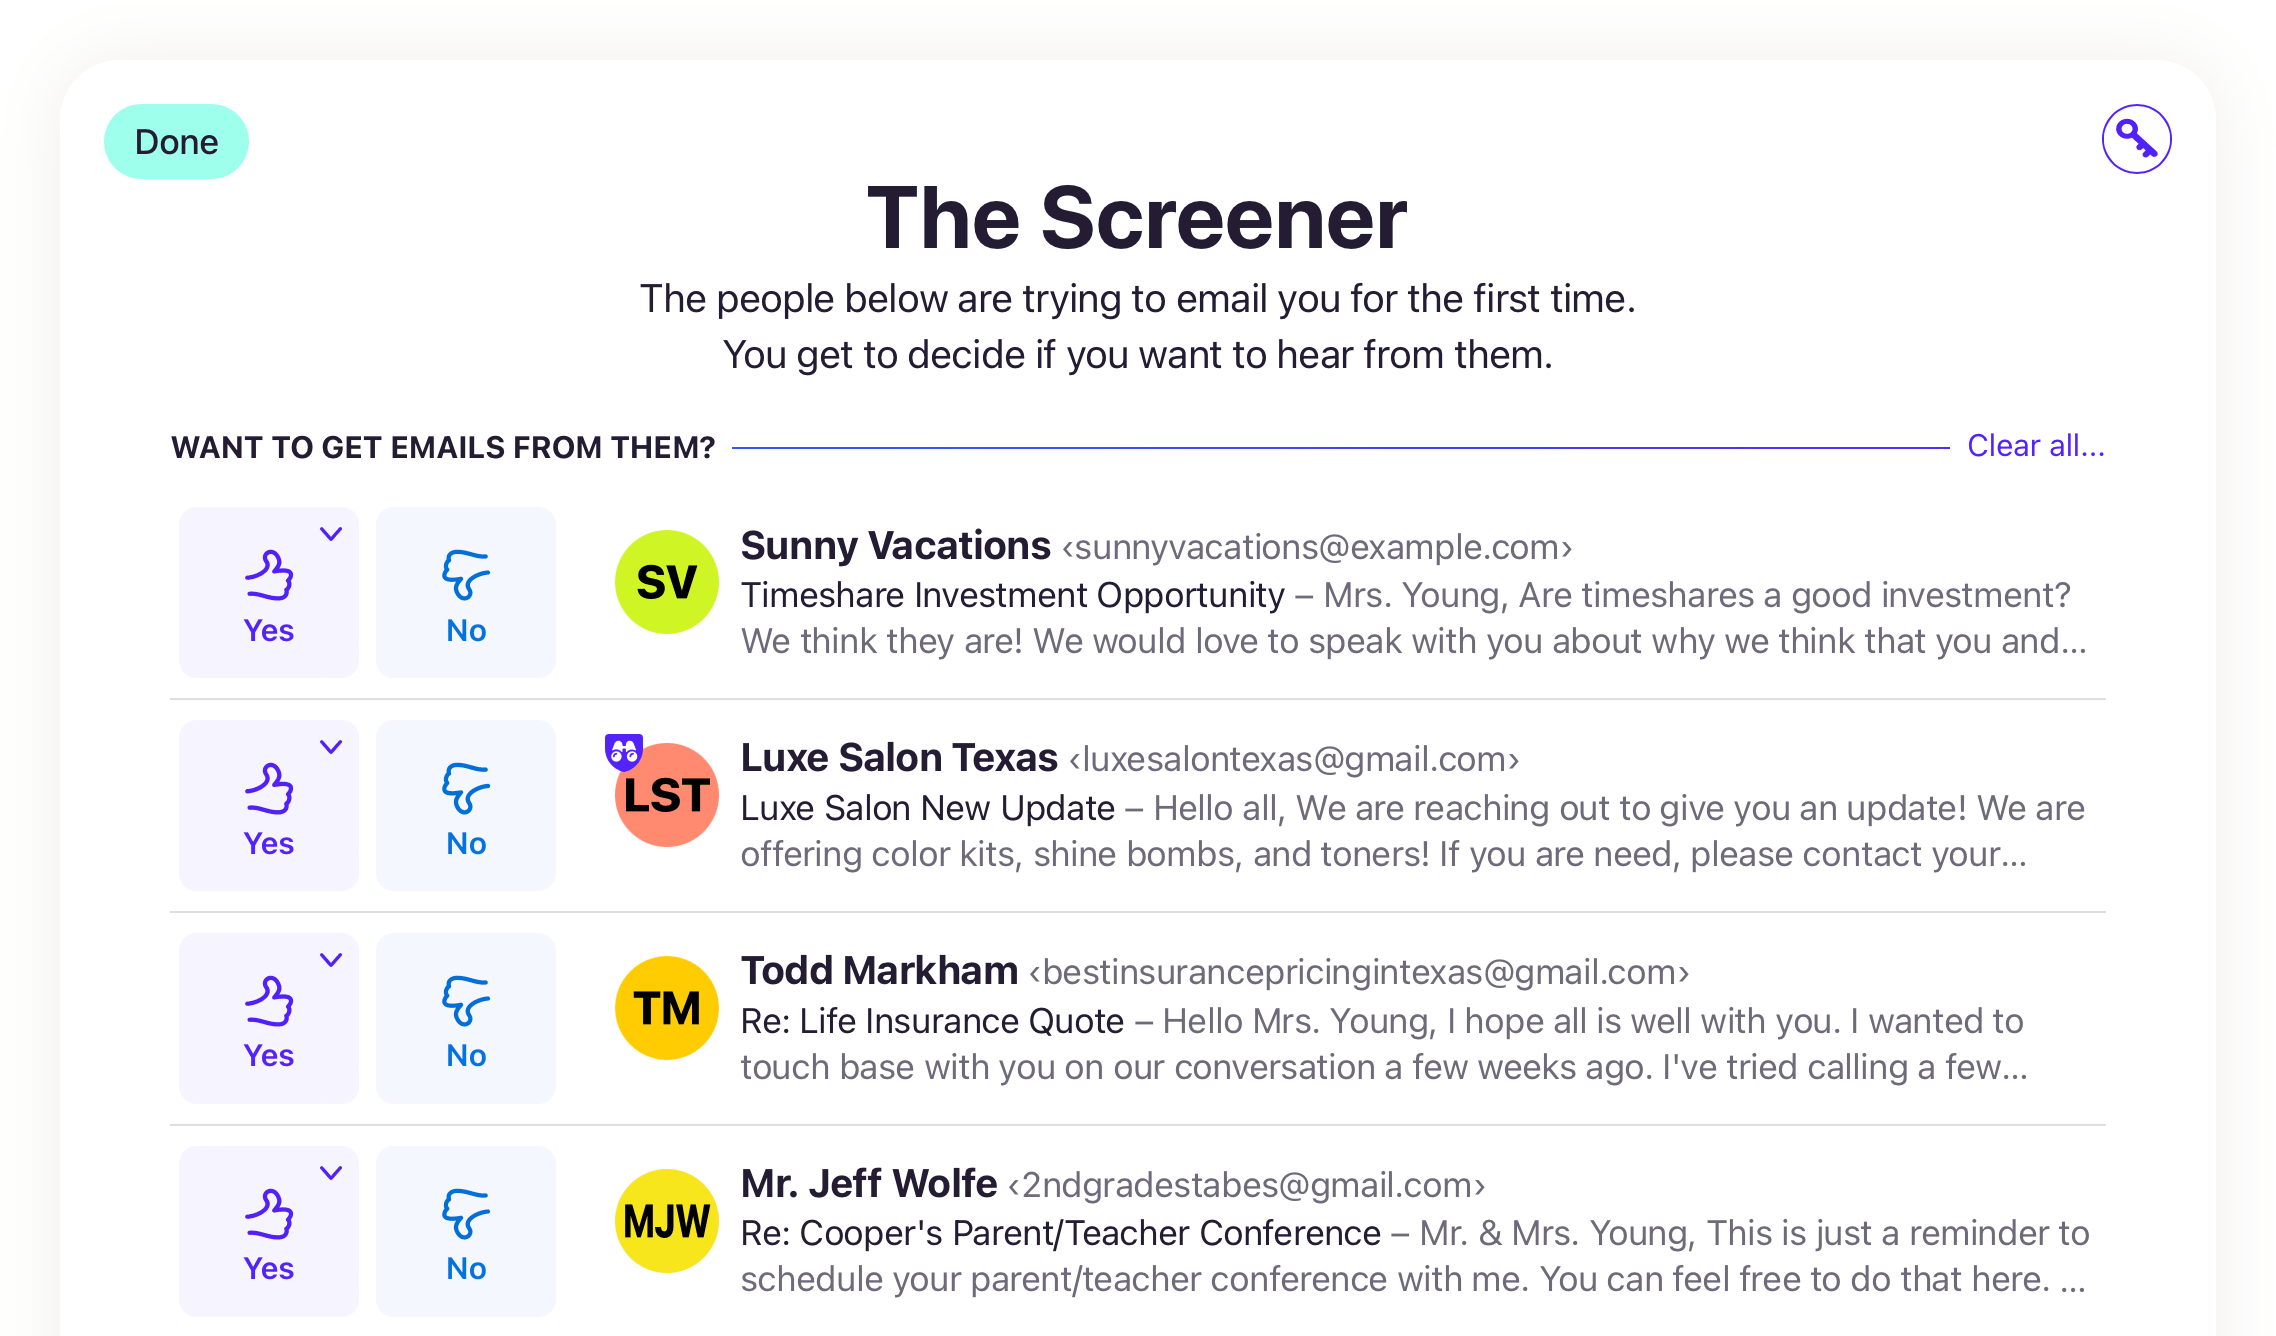 The Screener